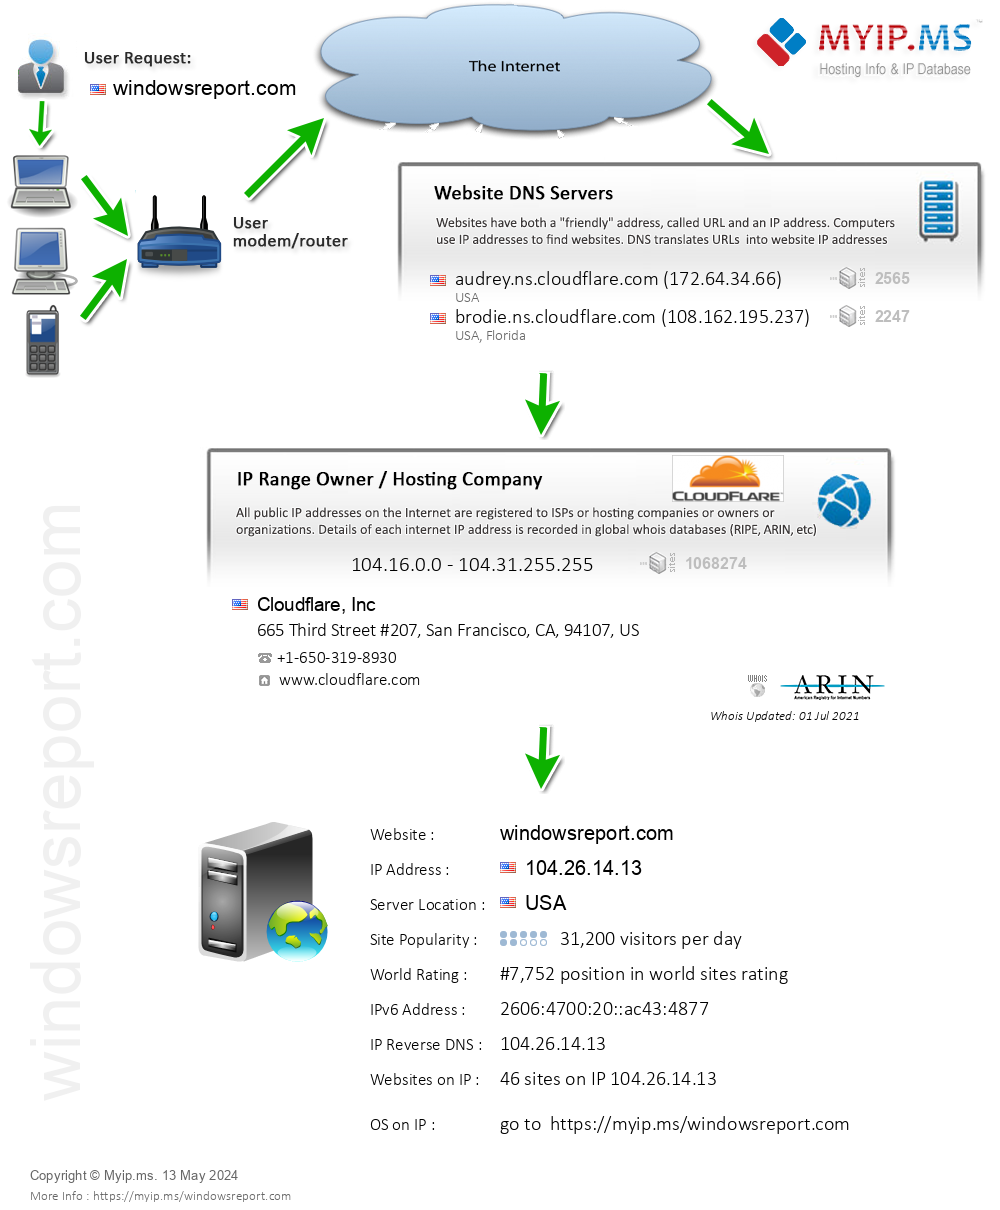 Windowsreport.com - Website Hosting Visual IP Diagram